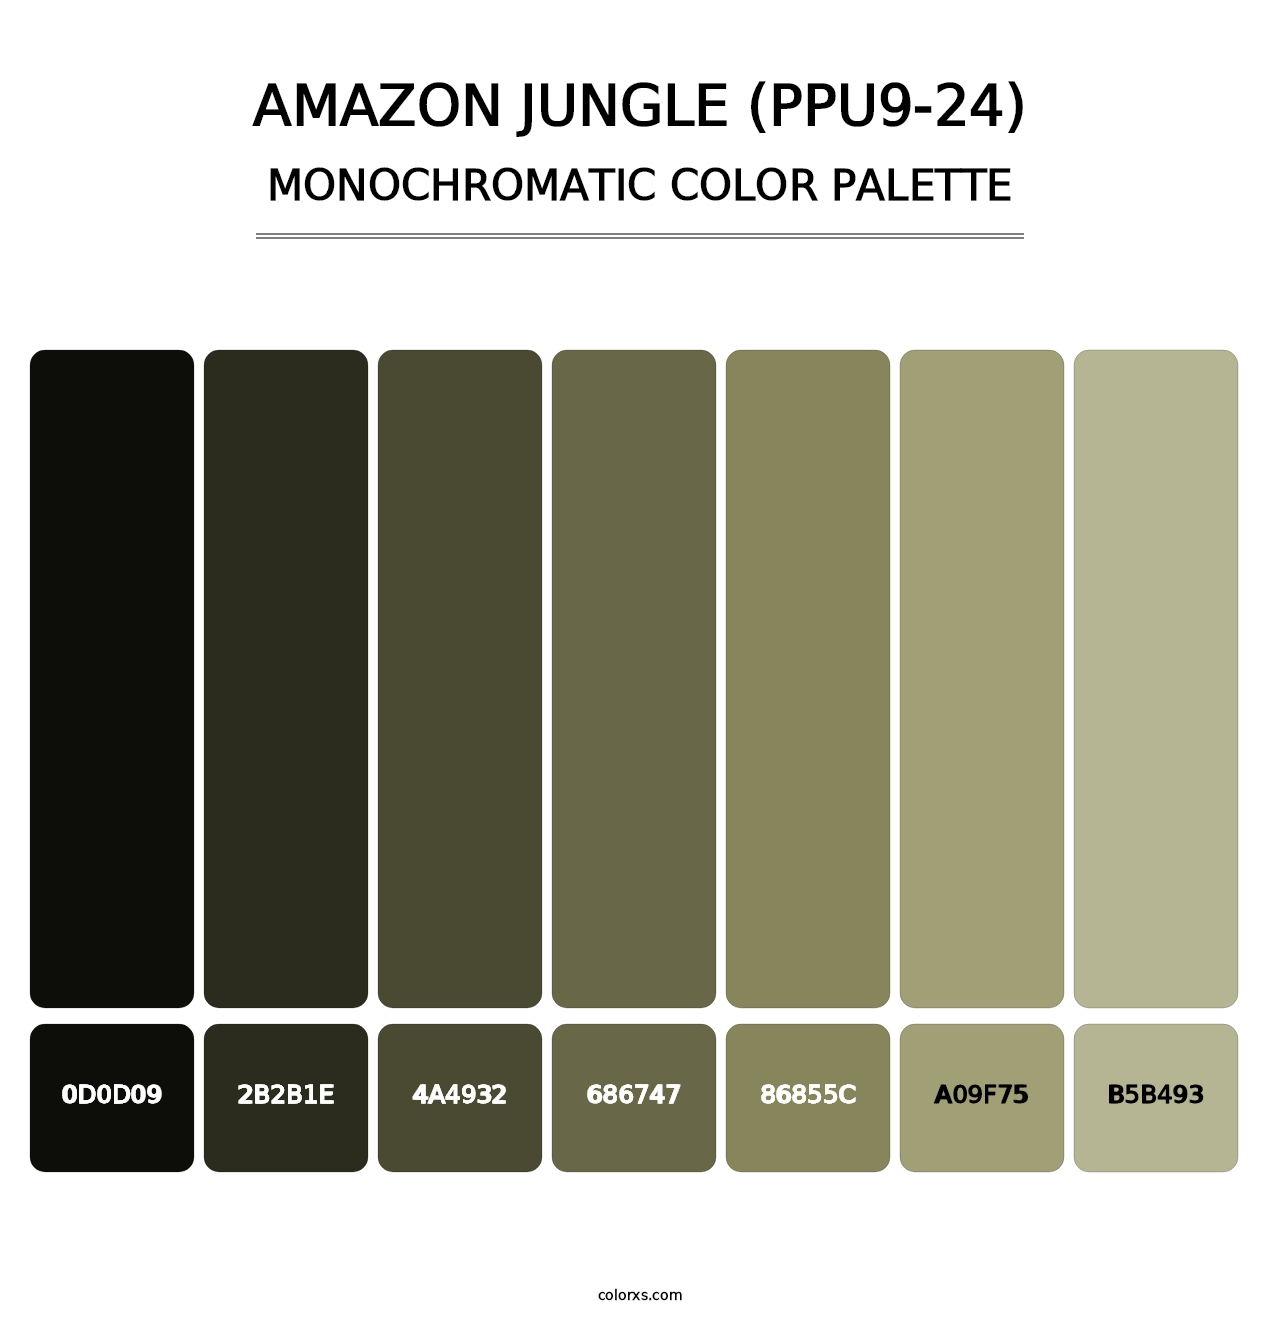 Amazon Jungle (PPU9-24) - Monochromatic Color Palette